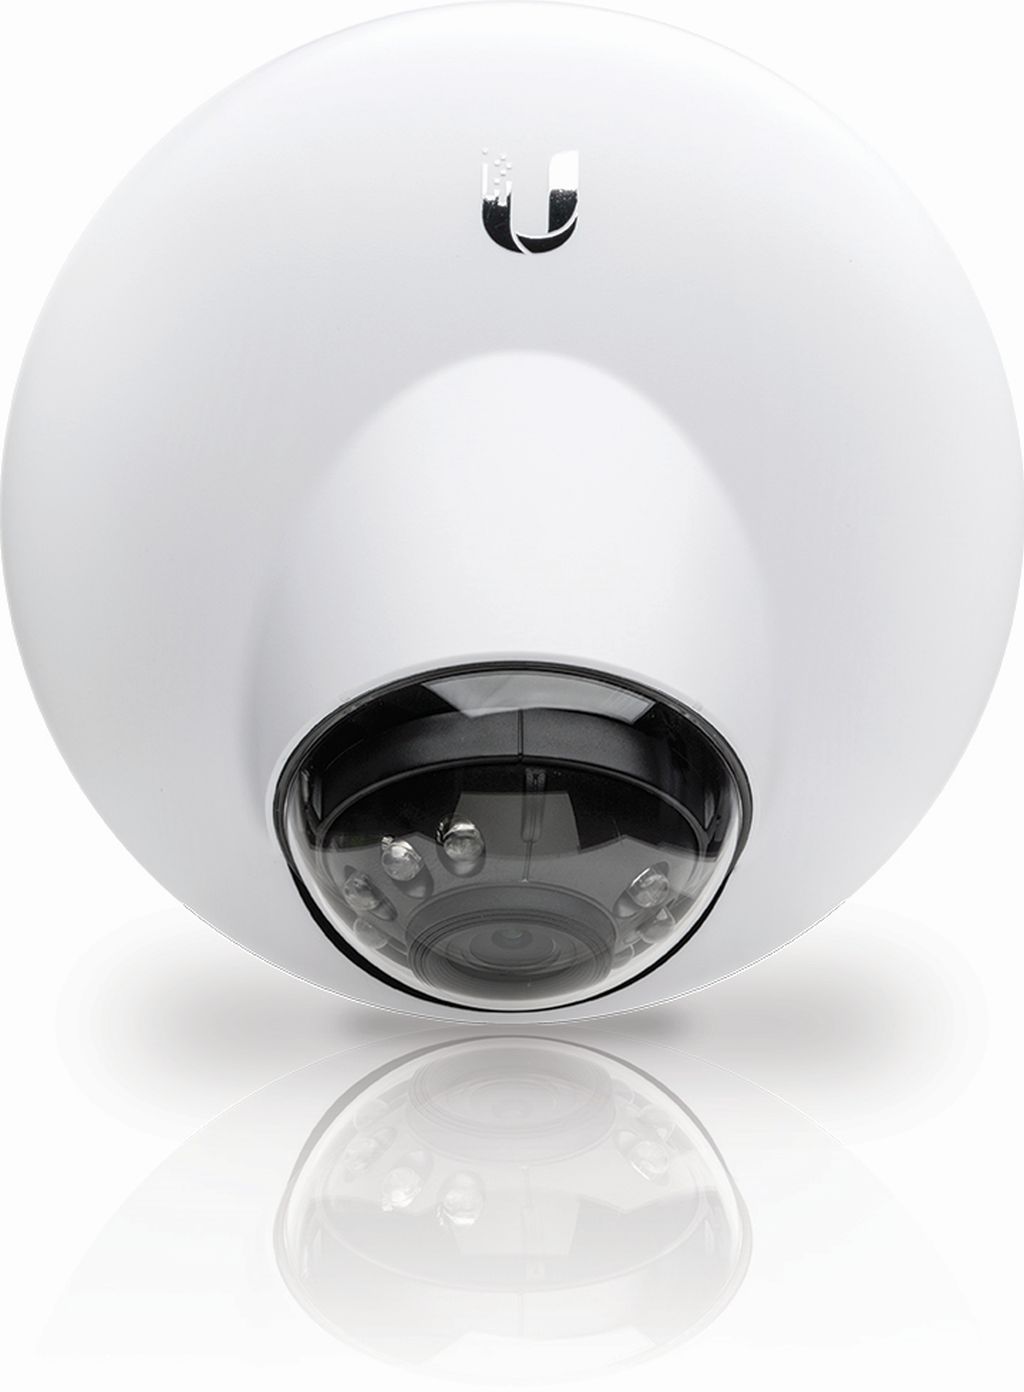 Ubiquiti UniFi Video Camera G3 Dome, 5Pack, UVC-G3-DOME-5 